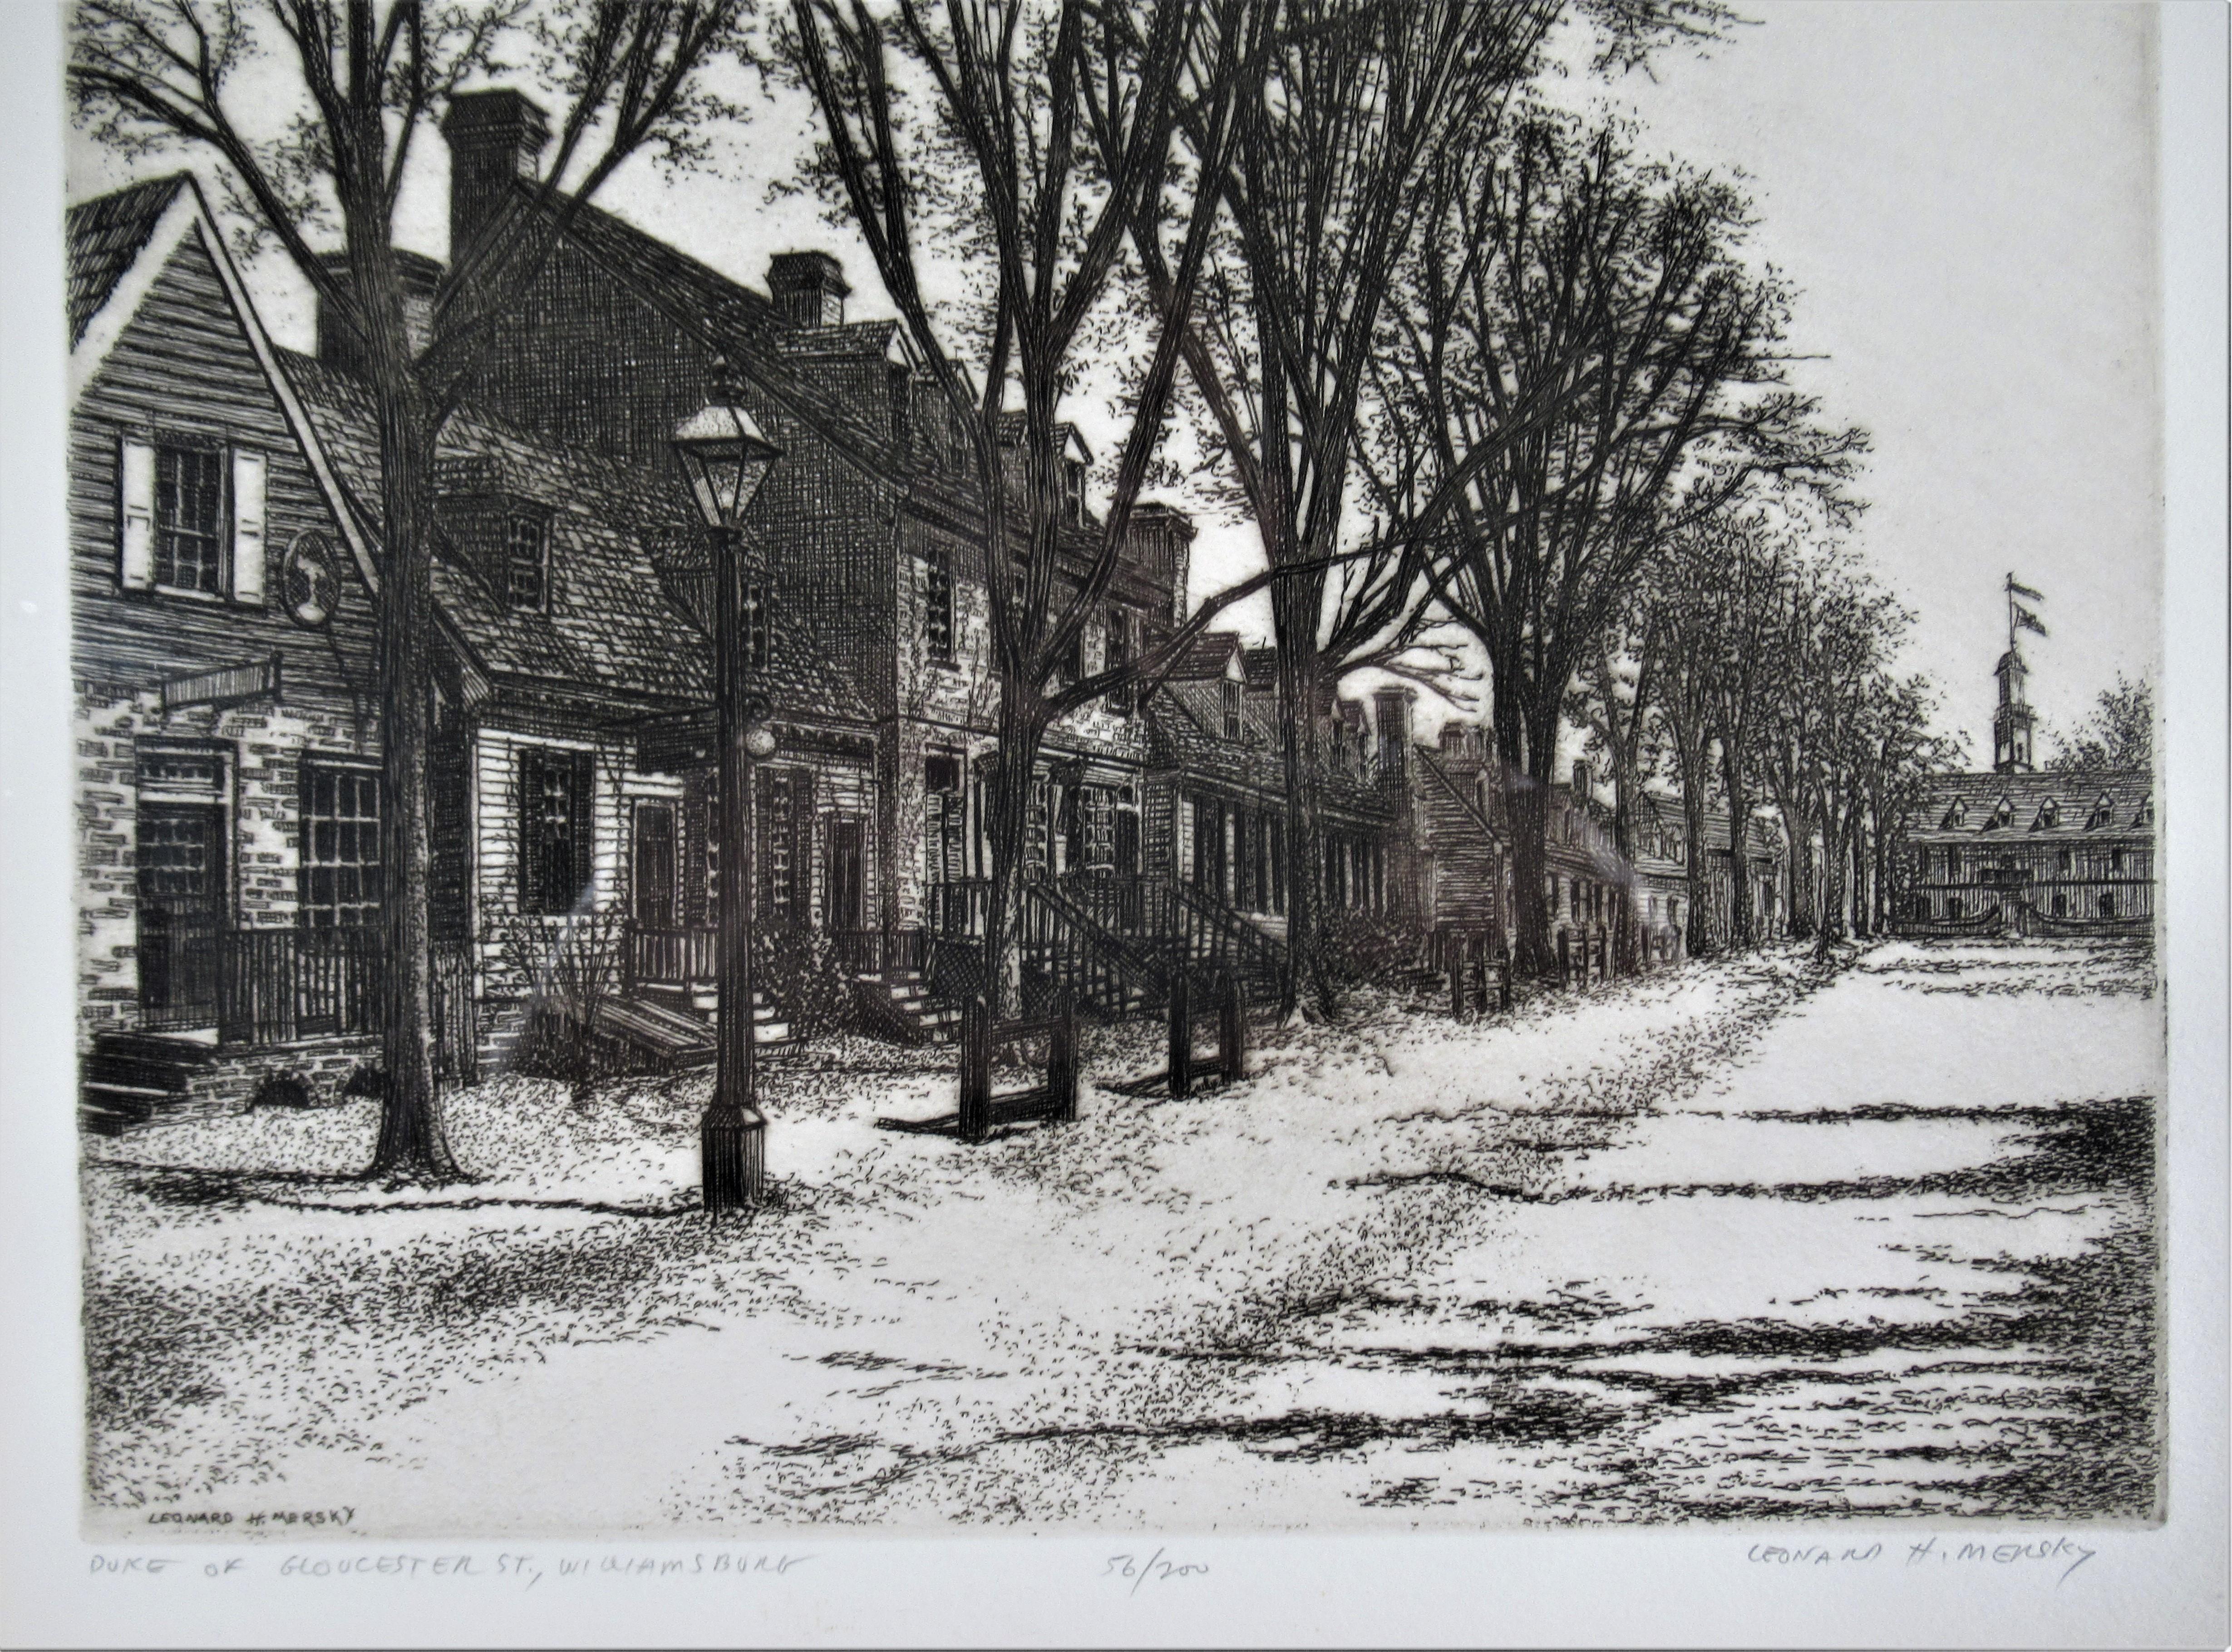 Duke of Gloucester Street, Willamsburg - Print by Leonard H. Mersky